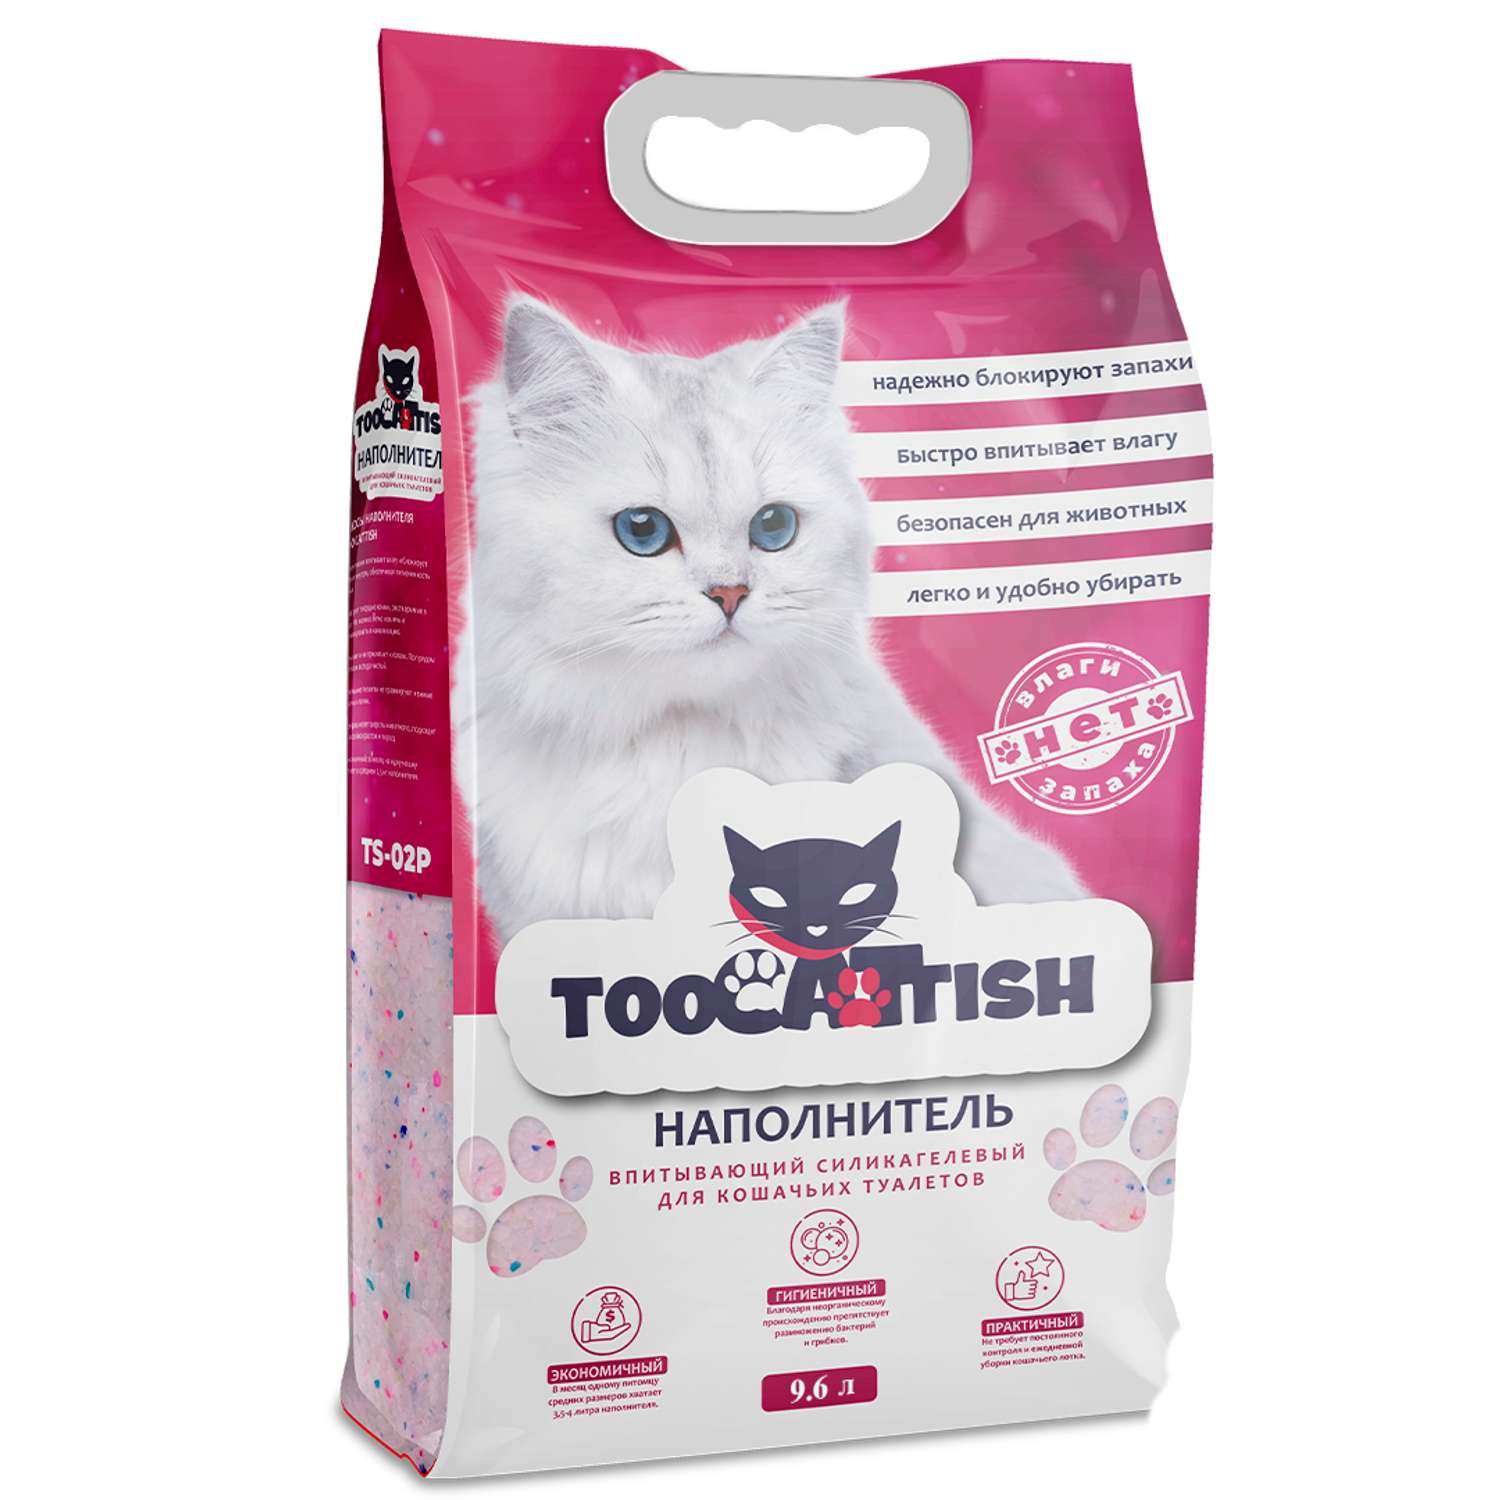 Наполнитель для кошек TooCattish Pink 9.6 л - фото 1